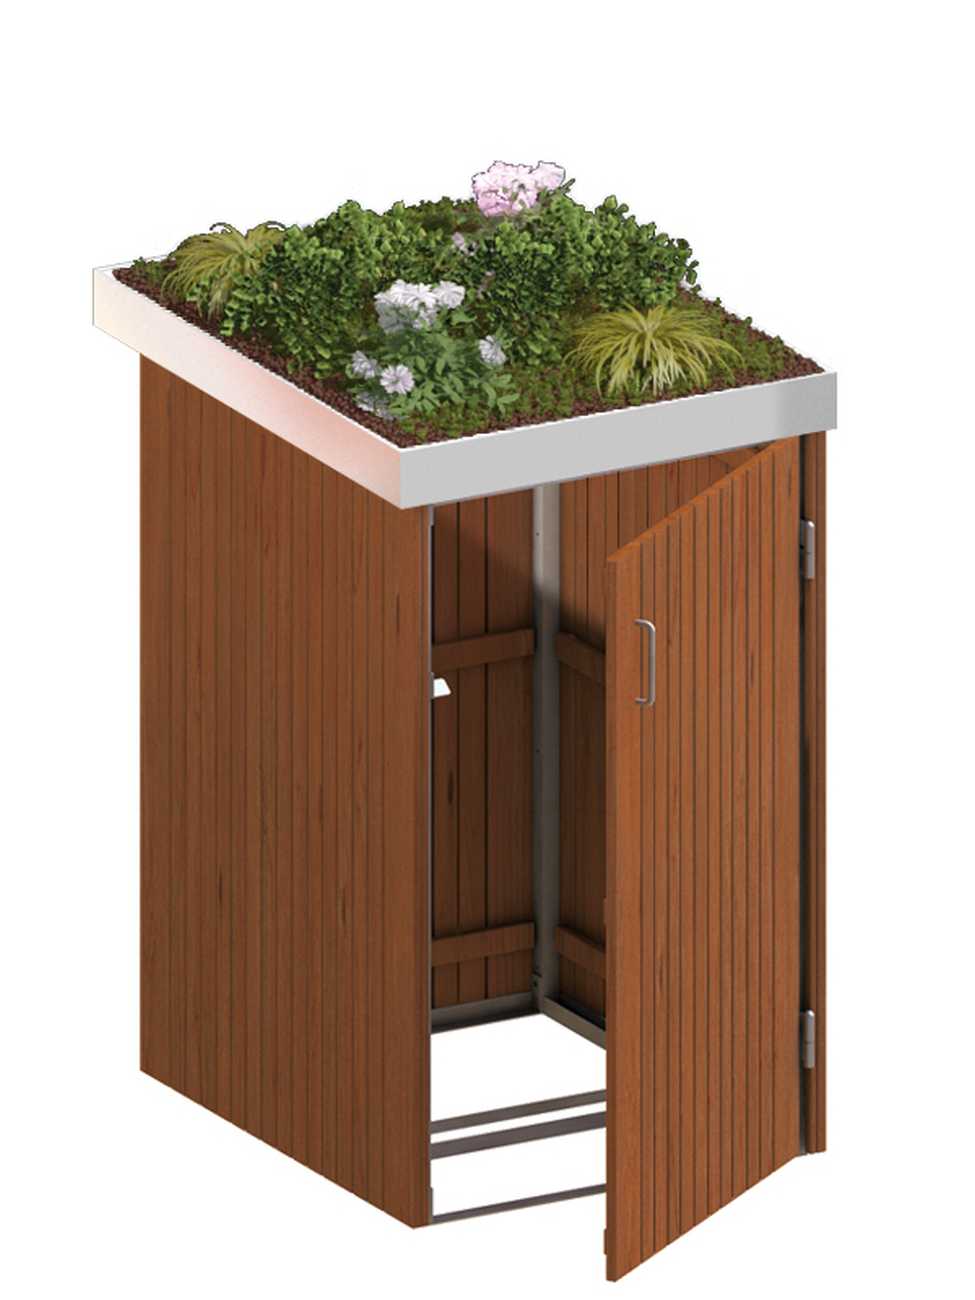 Binto Mülltonnenbox mit Hartholz-Verkleidung und Edelstahl-Pflanzschale